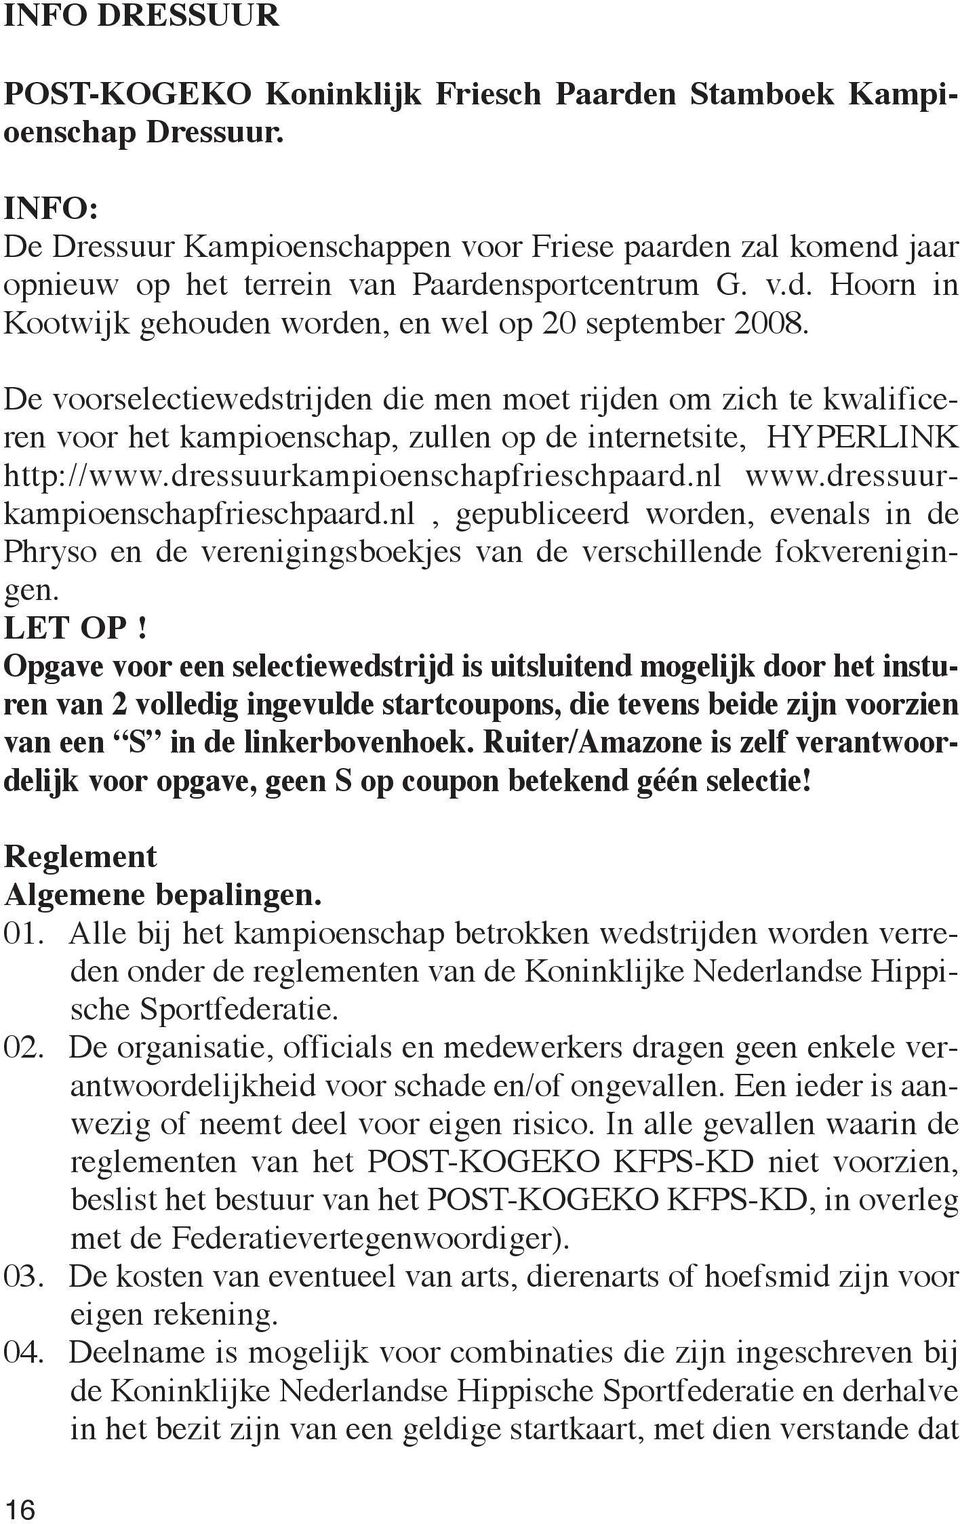 De voorselectiewedstrijden die men moet rijden om zich te kwalificeren voor het kampioenschap, zullen op de internetsite, HYPERLINK http://www.dressuurkampioenschapfrieschpaard.nl www.